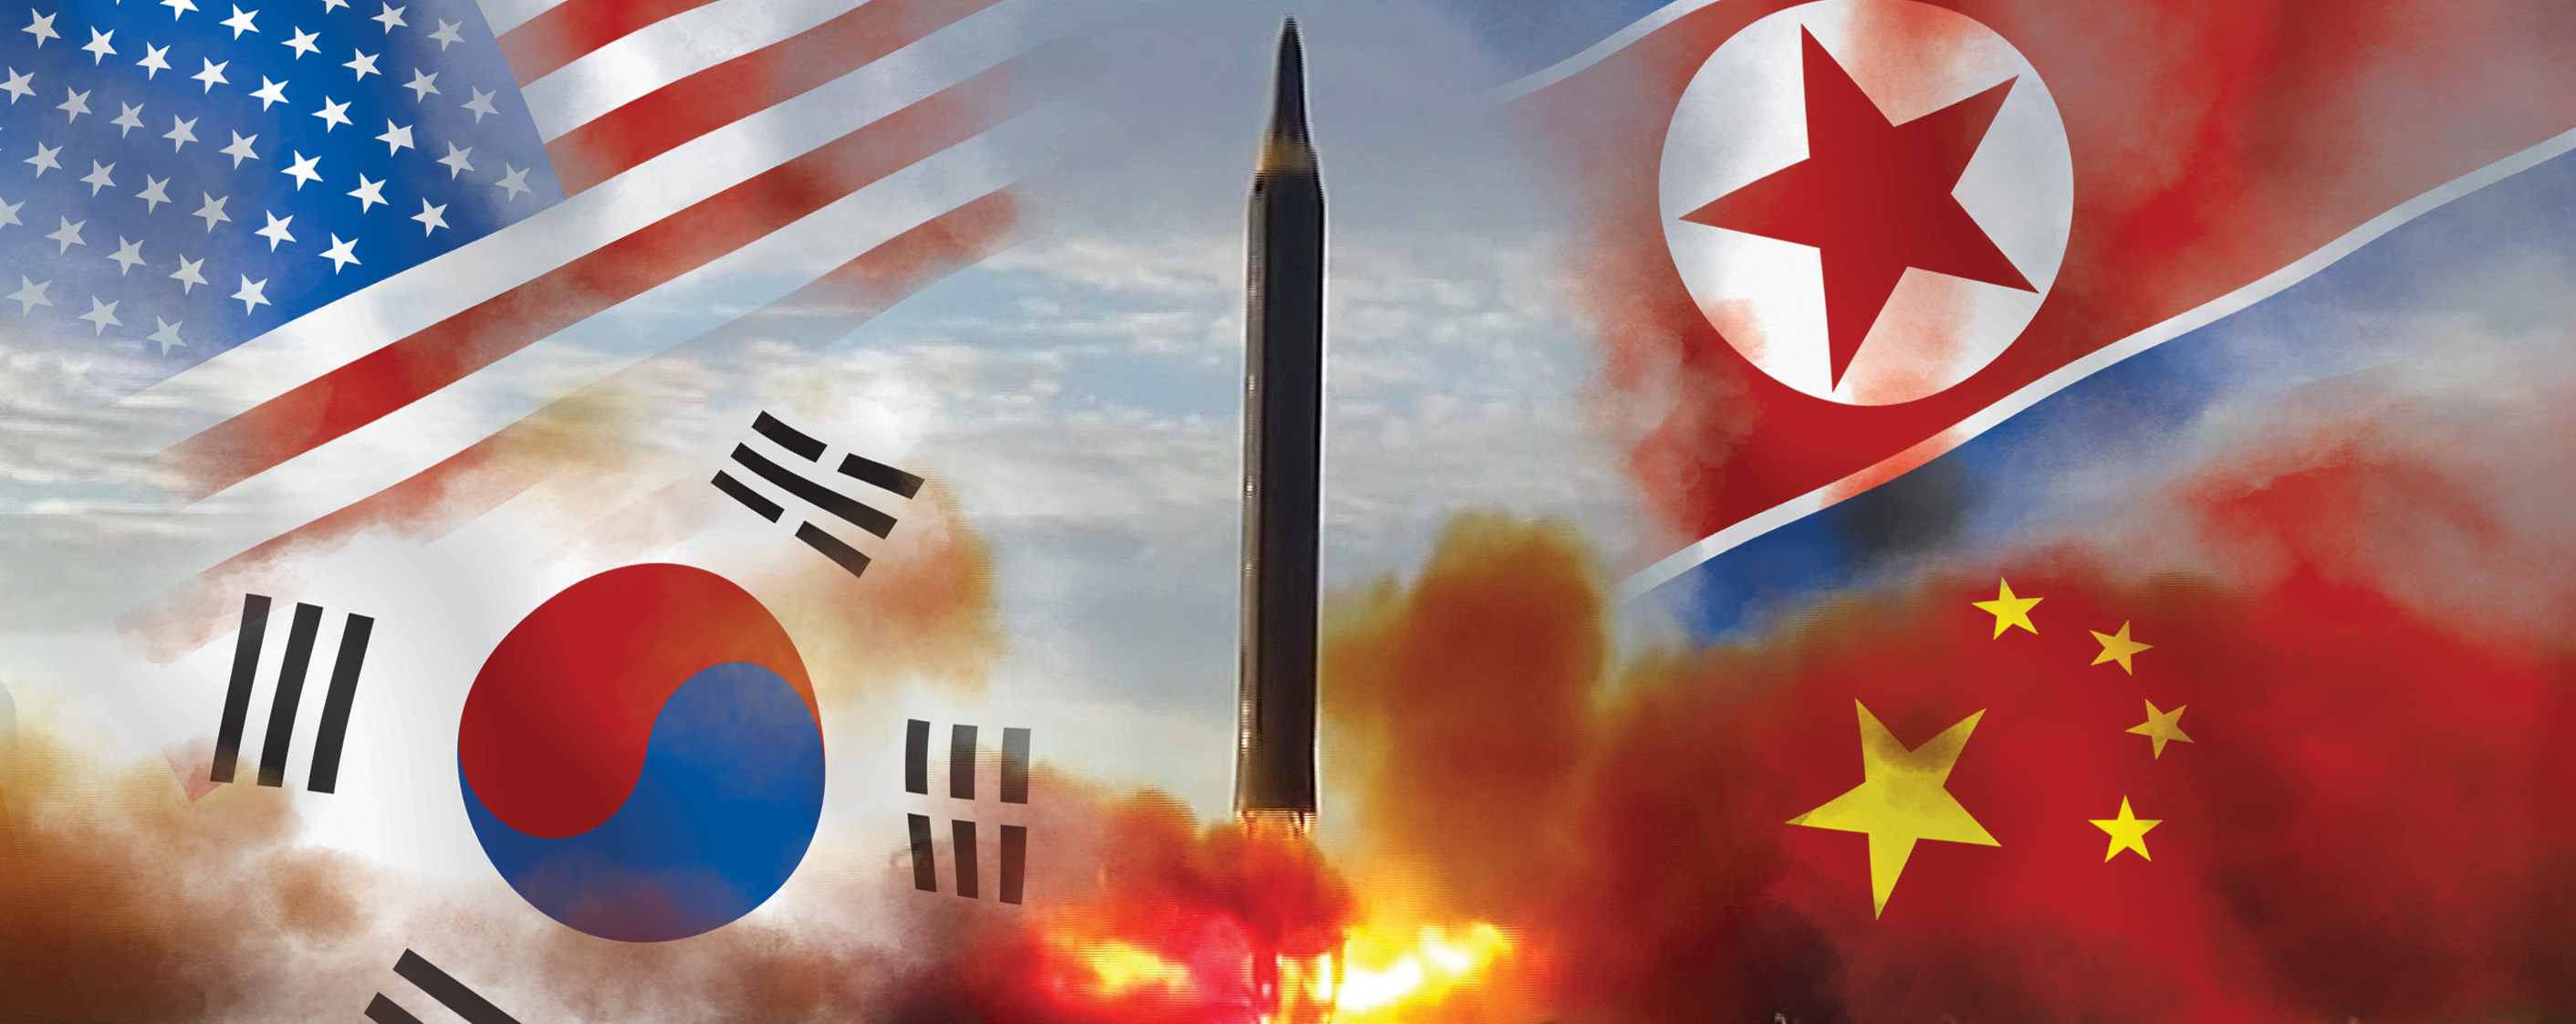 북한의 잇단 핵실험과 미사일 도발로 한반도 정세는 한치 앞을 내다볼 수 없는 불확실성 속으로 빠져들고 있다. 사진은 지난 9월 15일 북한의 중장거리탄도미사일(IRBM) ‘화성12형’ 발사 장면과 한국·미국·북한·중국(왼쪽 아래부터 시계 방향으로) 국기를 합성한 것. 서울신문 DB